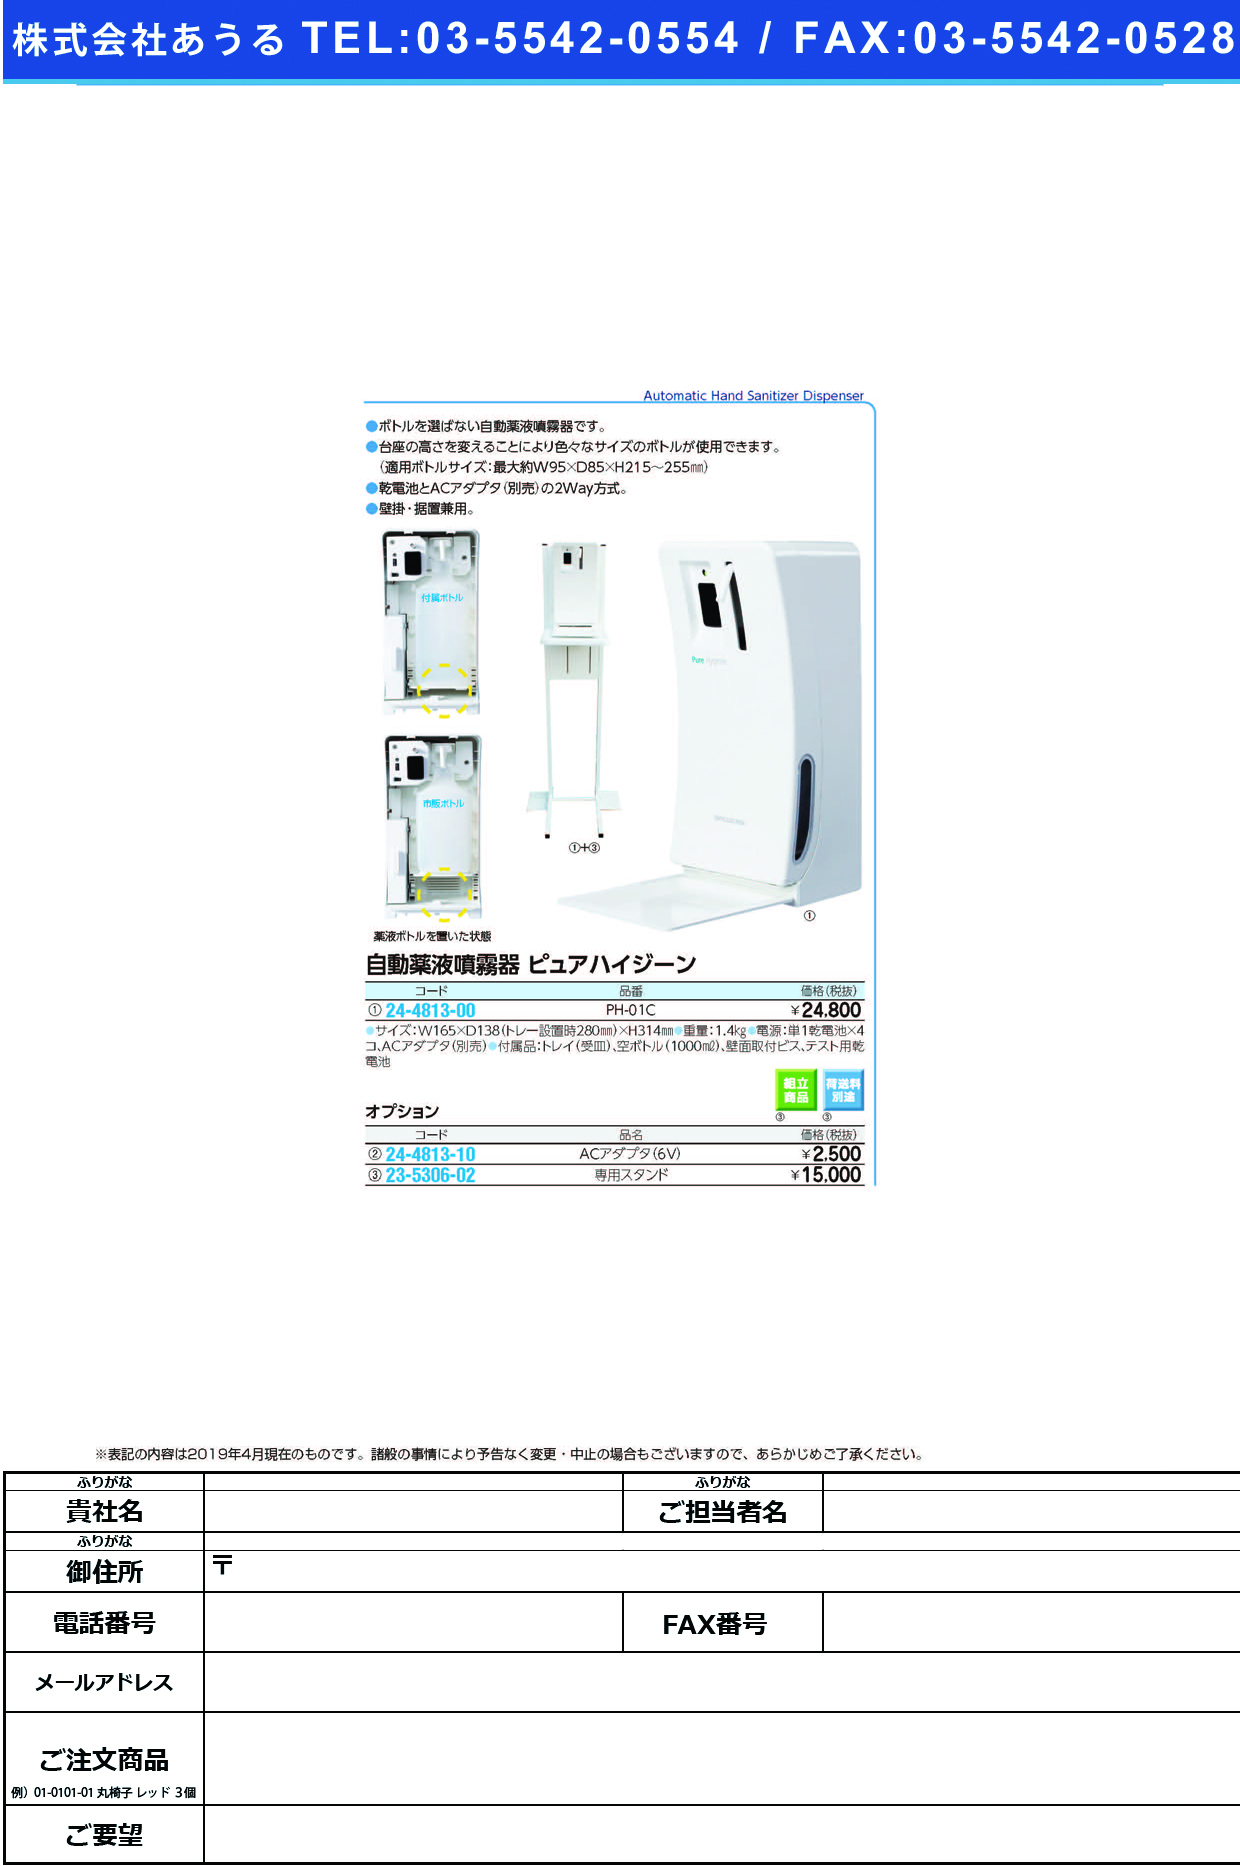 (24-4813-00)ピュアハイジーン（自動薬液噴霧器） PH-01B ﾋﾟｭｱﾊｲｼﾞｰﾝｼﾞﾄﾞｳﾔｸｴｷﾌ【1台単位】【2019年カタログ商品】